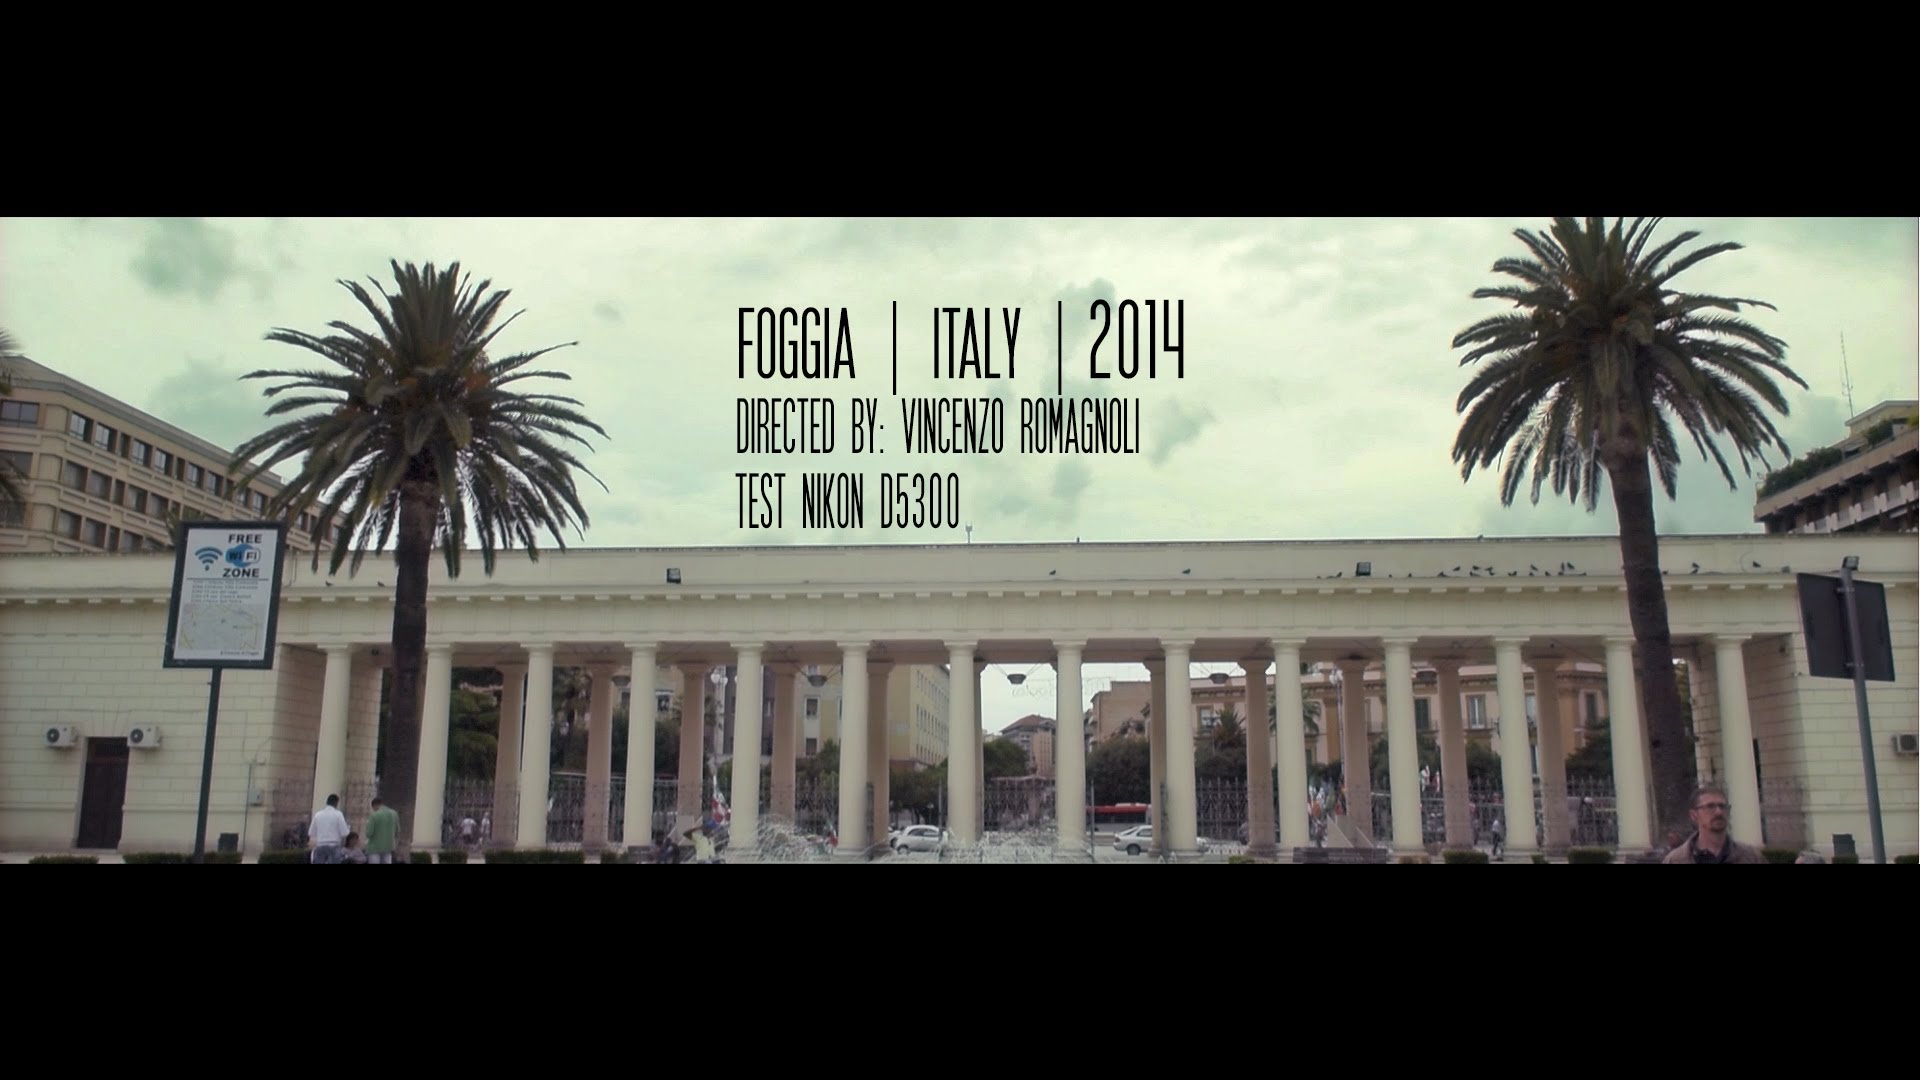 Nikon D5300 slow motion – Foggia • Italy • 2014